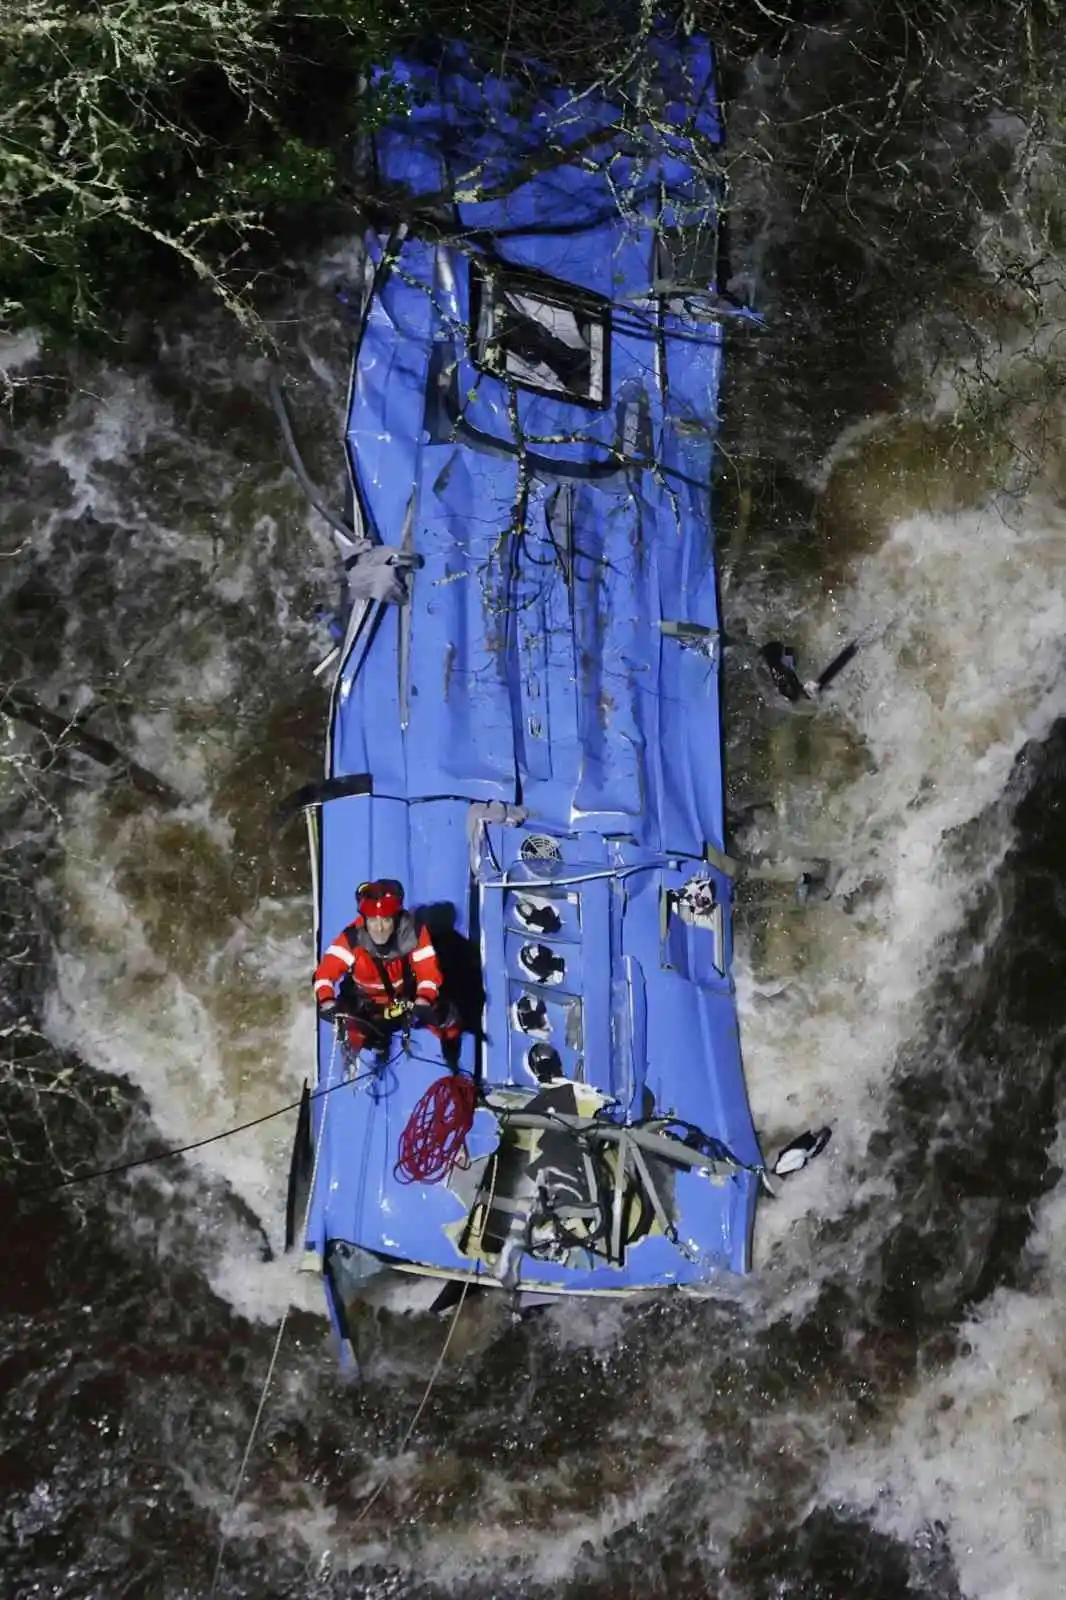 Brezilya’da yolcu otobüsü nehre düştü: 3 ölü, 4 kayıp
